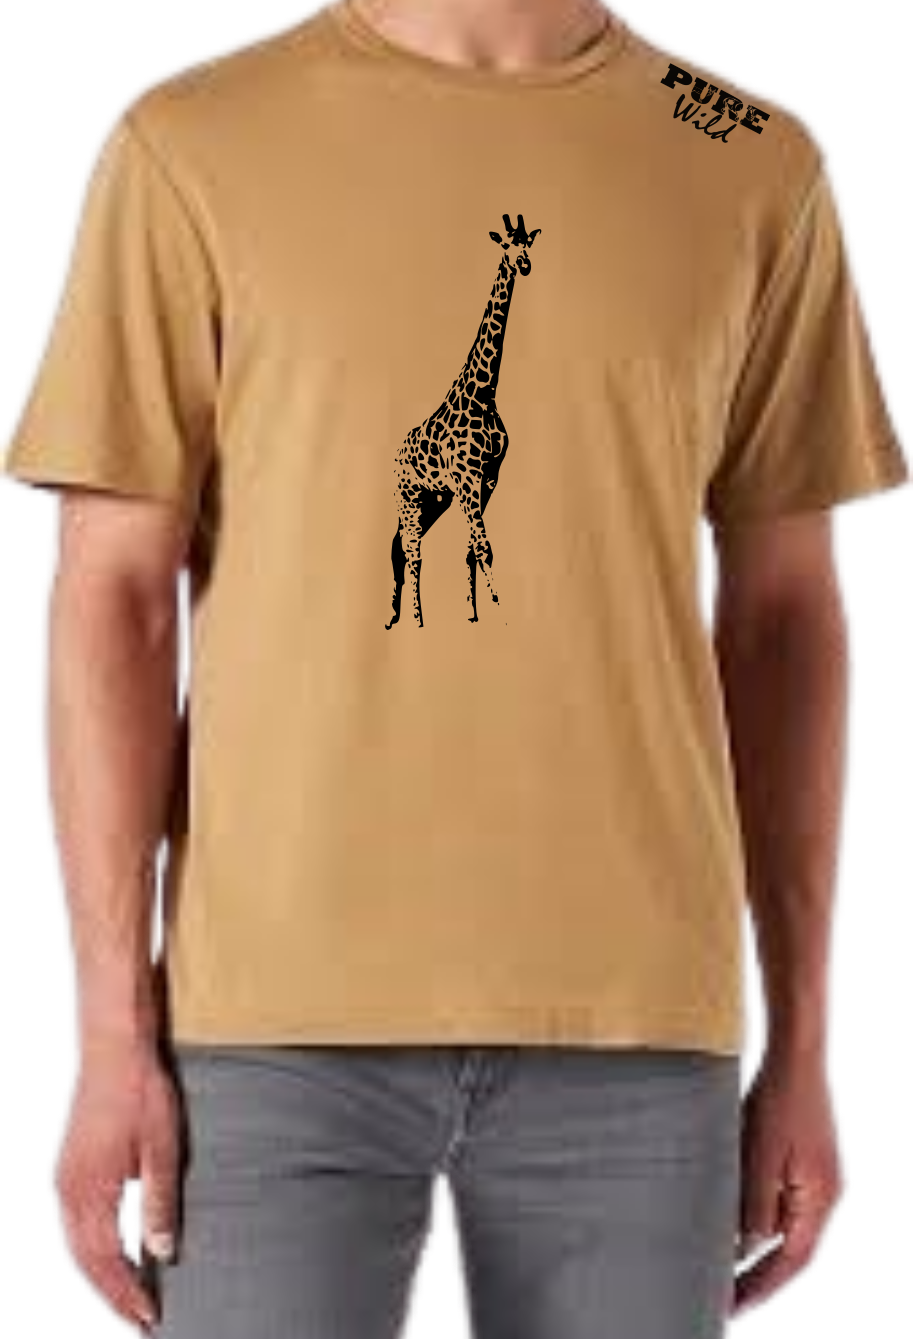 Giraffe T-Shirt For A Real Man